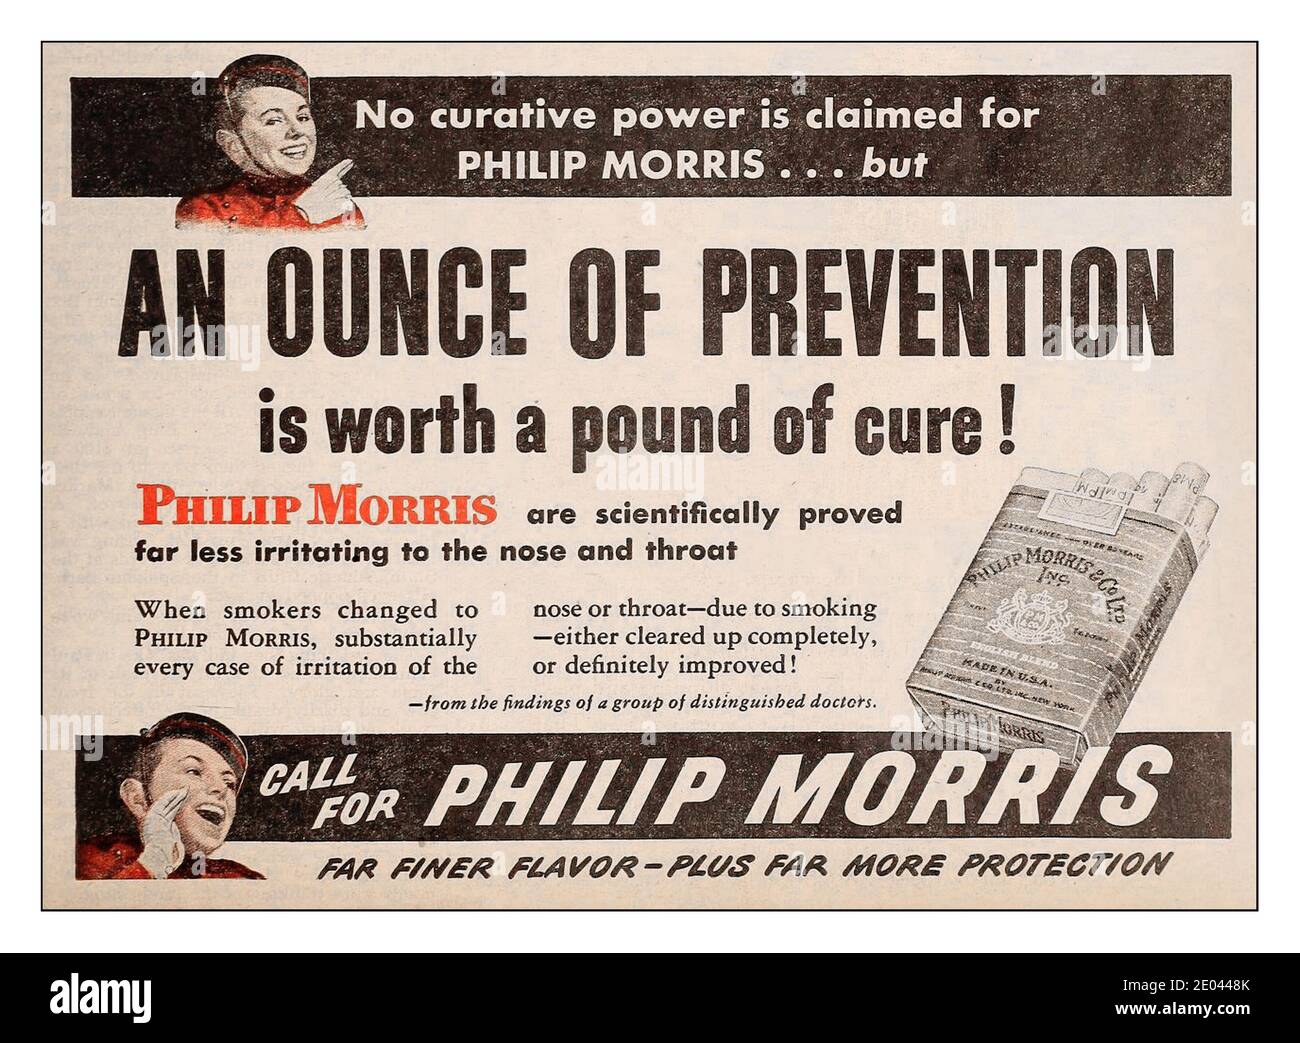 VINTAGE ZIGARETTENWERBUNG BEHAUPTET 1945 Philip Morris „ eine Unze Prävention ist ein Pfund Heilung wert“ Zigarettenwerbung in den 1940er Jahren von einer angesehenen Gruppe von Ärzten…. Stockfoto